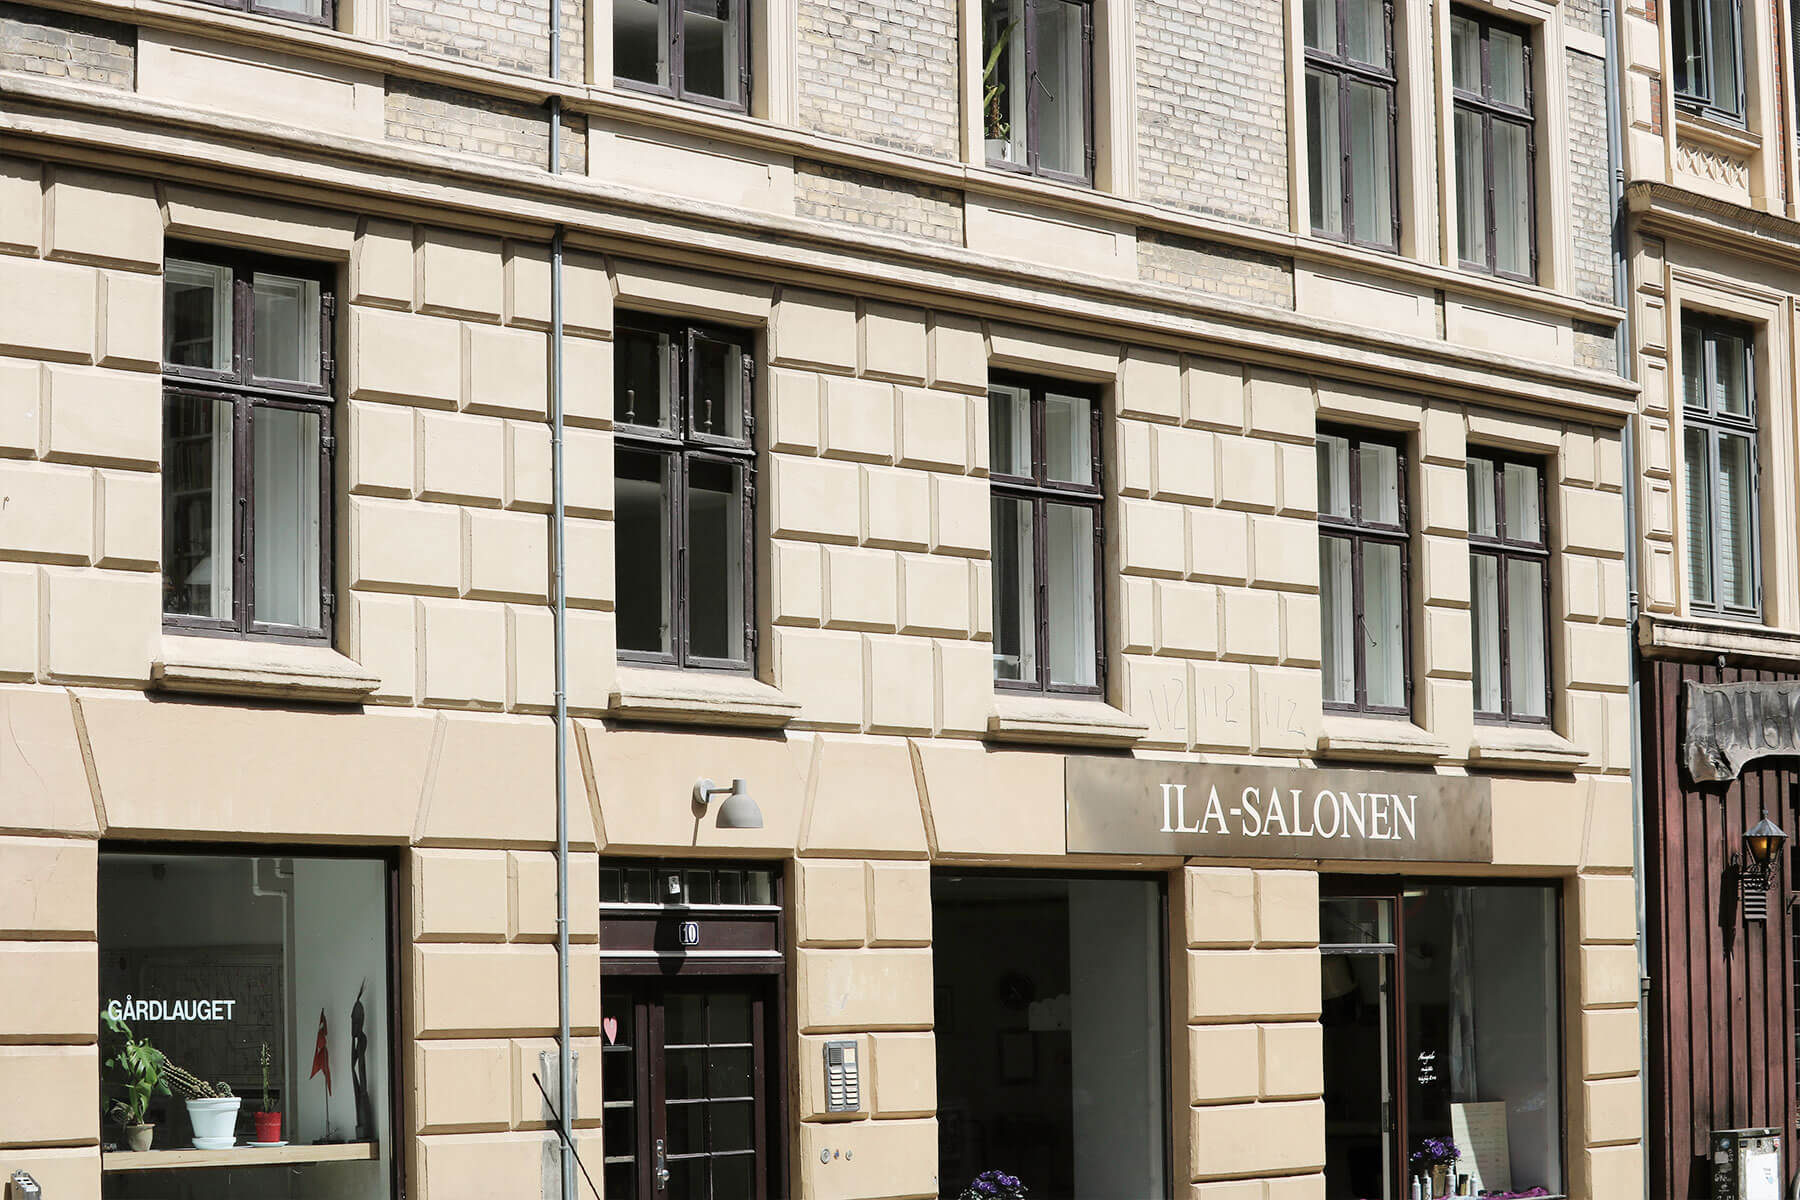 Facade og vinduer samt Ila-Salonen i stueetagen på ejendom på Korsgade på Nørrebro i København